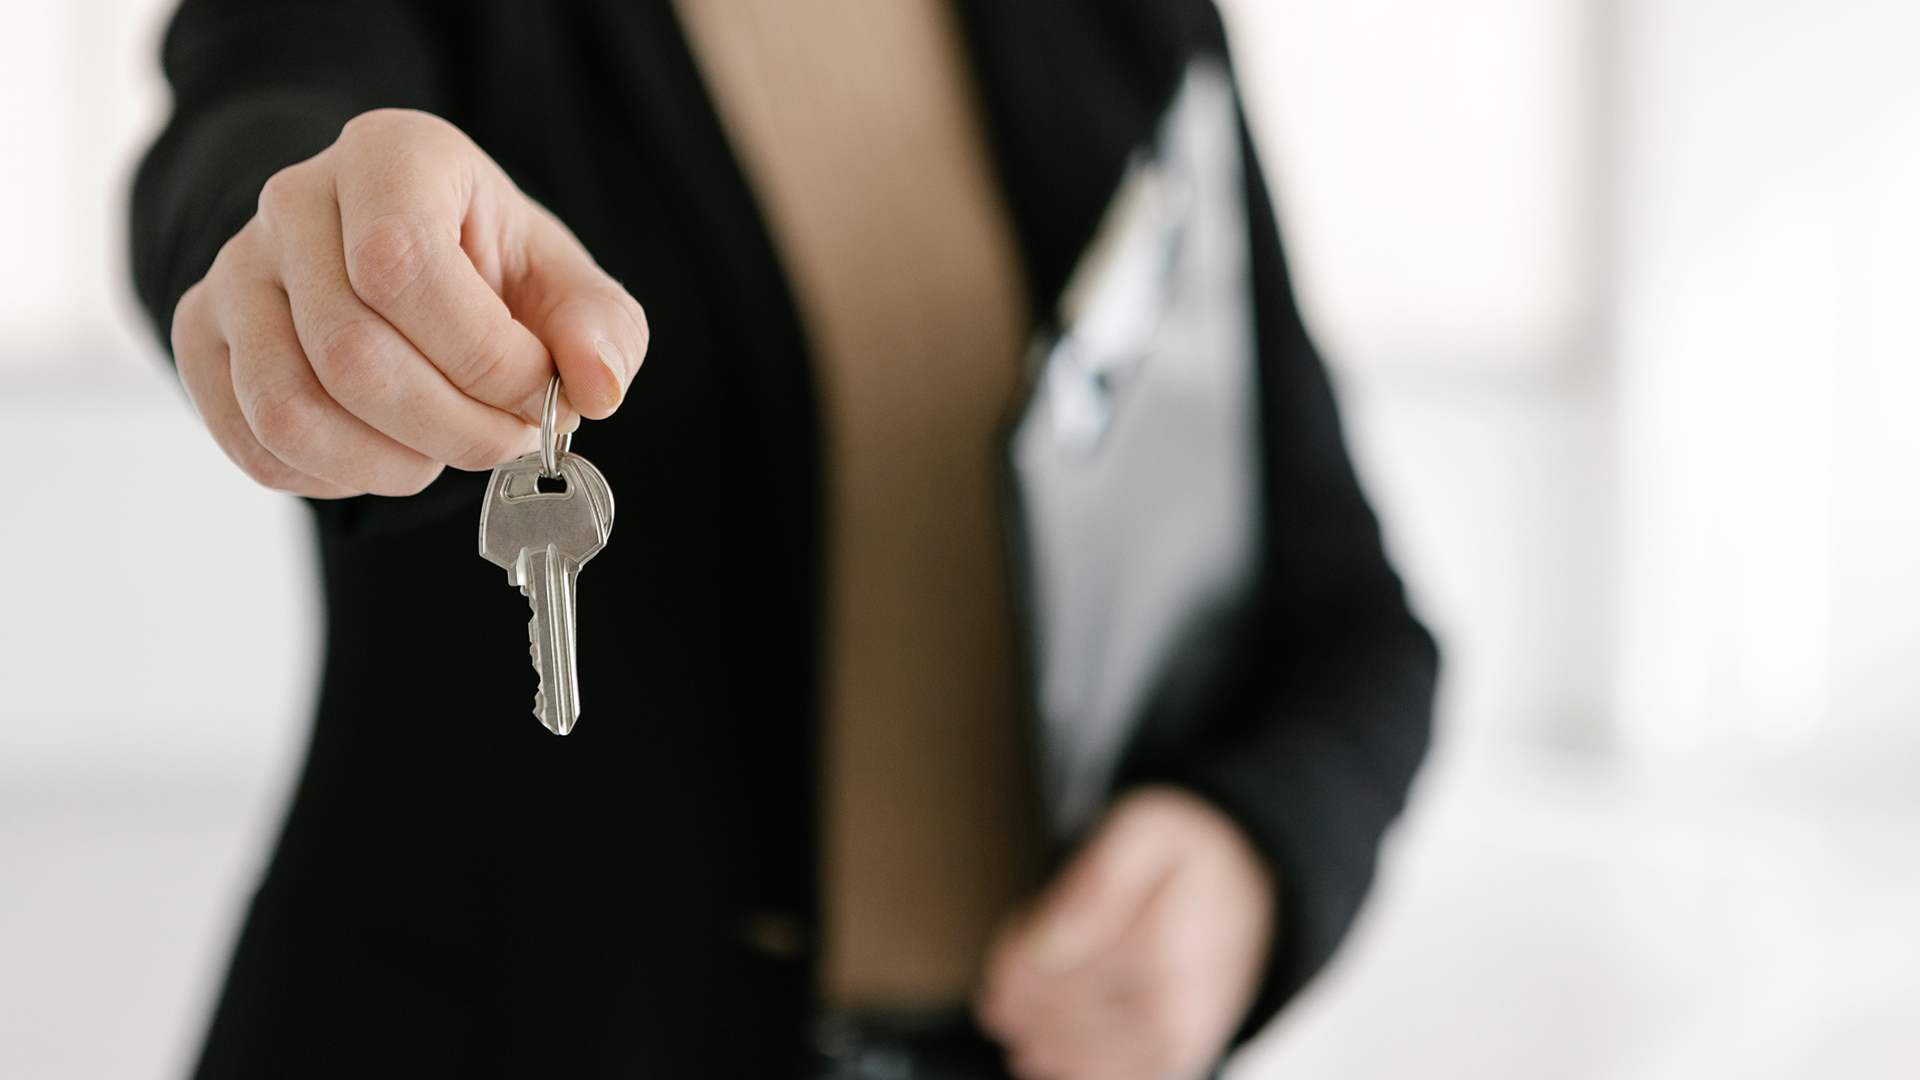 Llegar a obtener la llave para la vivienda exige cumplir varios requisitos previos 